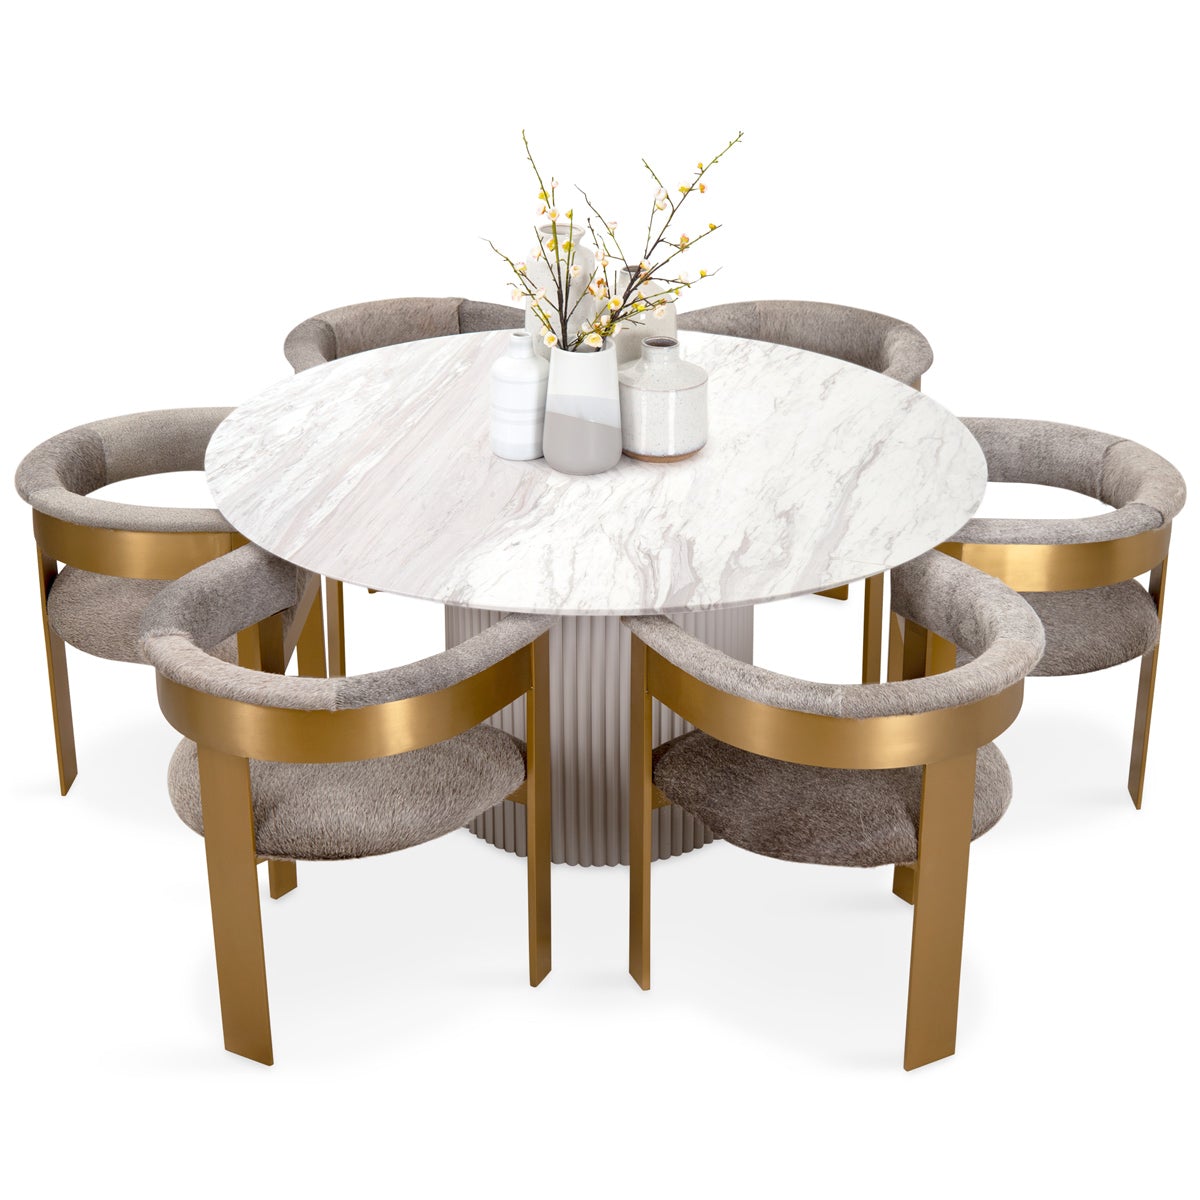 Ubud Round Dining Table - ModShop1.com